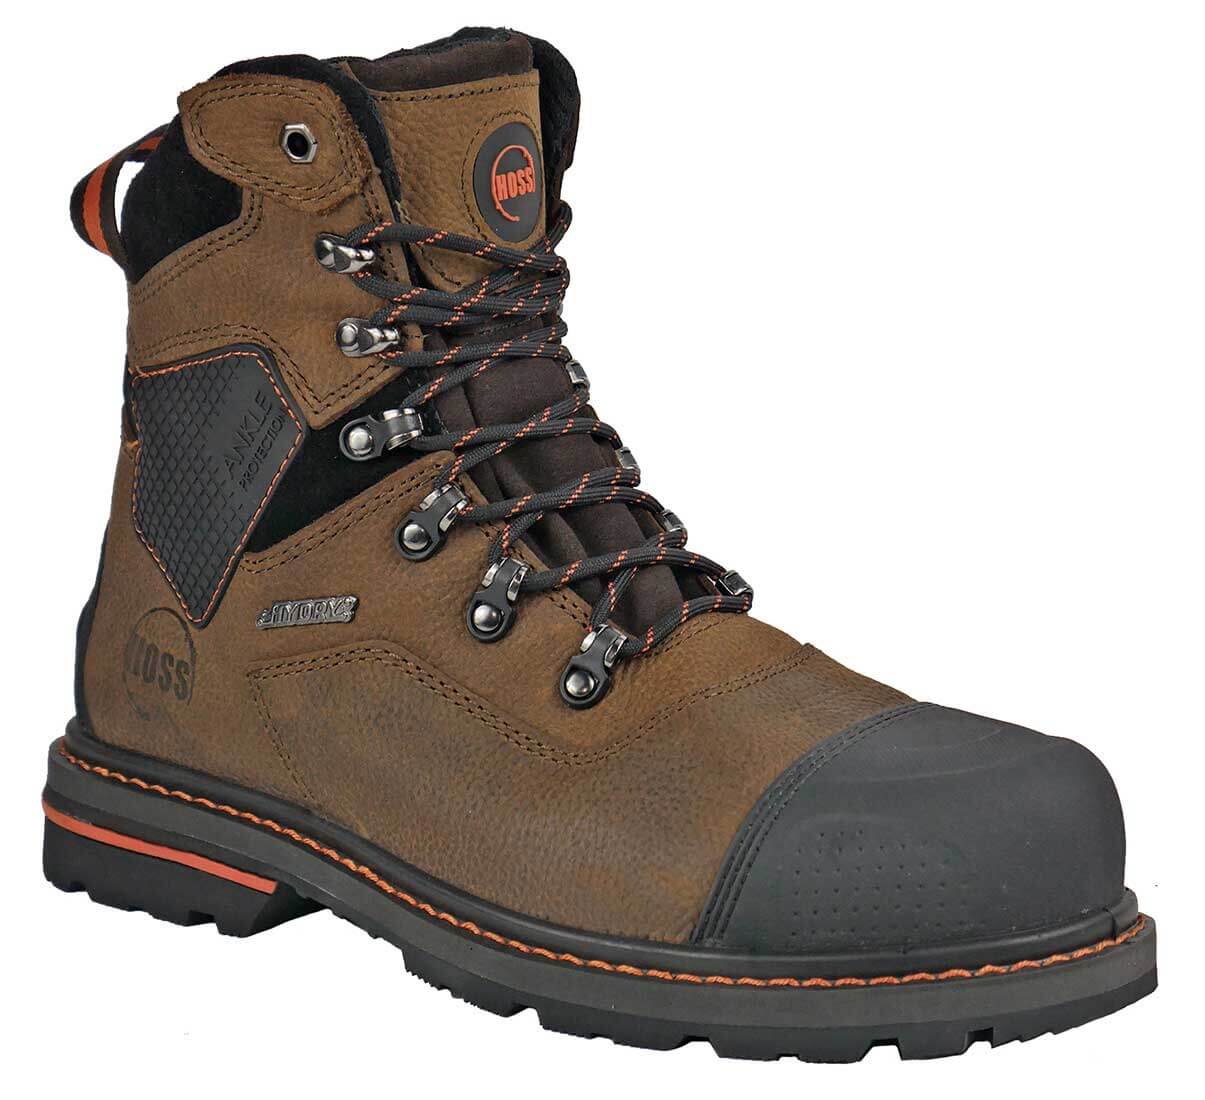 Hoss Boots Range Brown - 61172 - Men's 6 Waterproof Soft Toe Work Boot